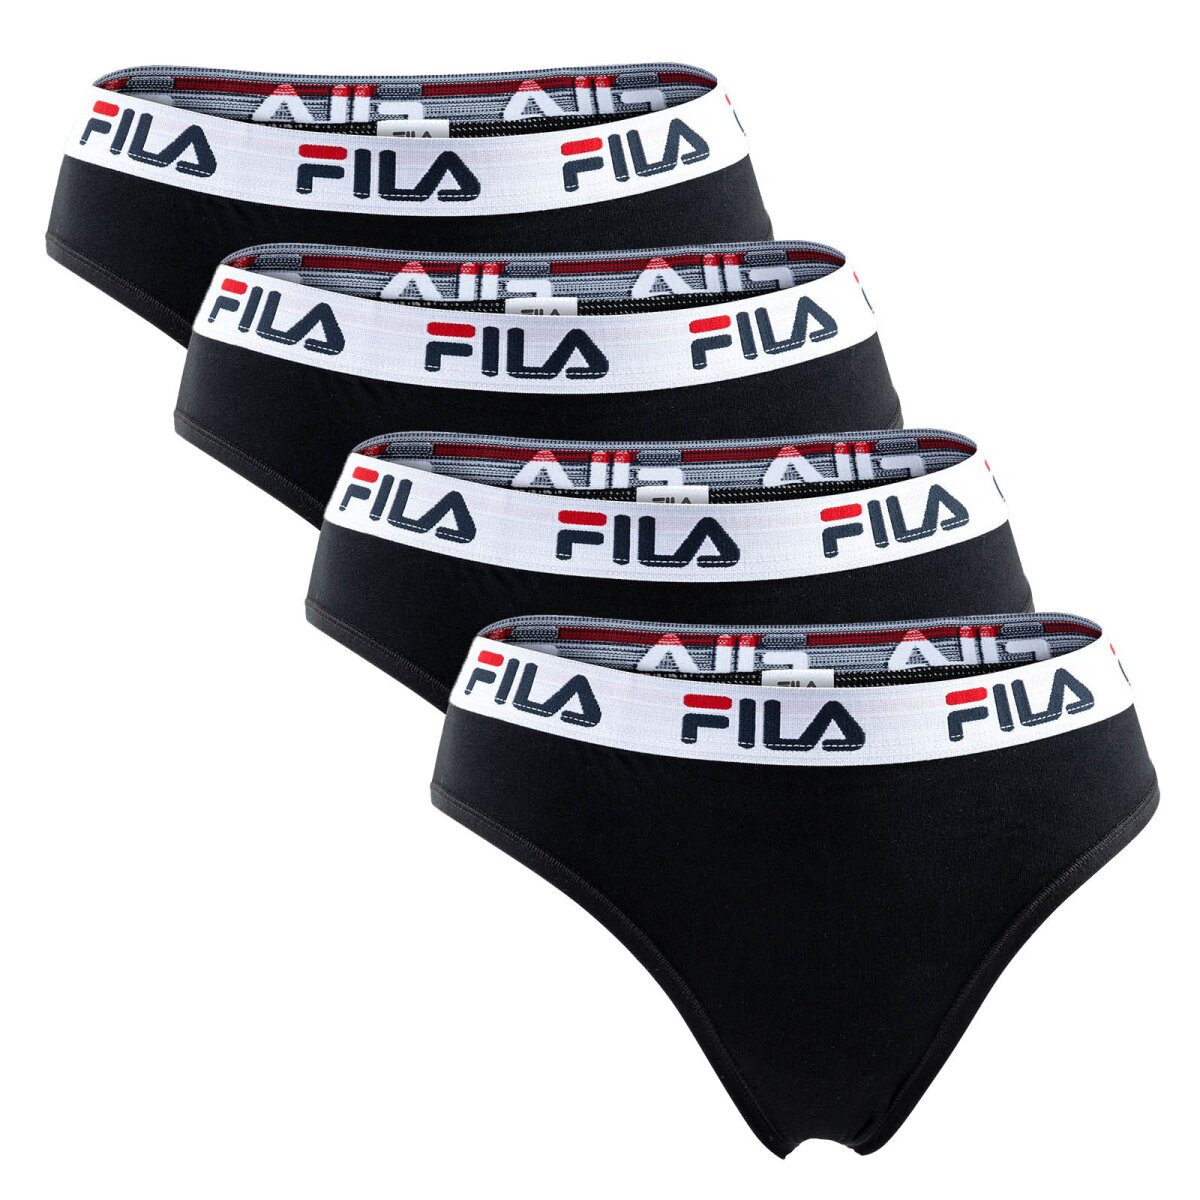 FILA sporty Brazilian briefs for women 4 Pack, 29,95 €